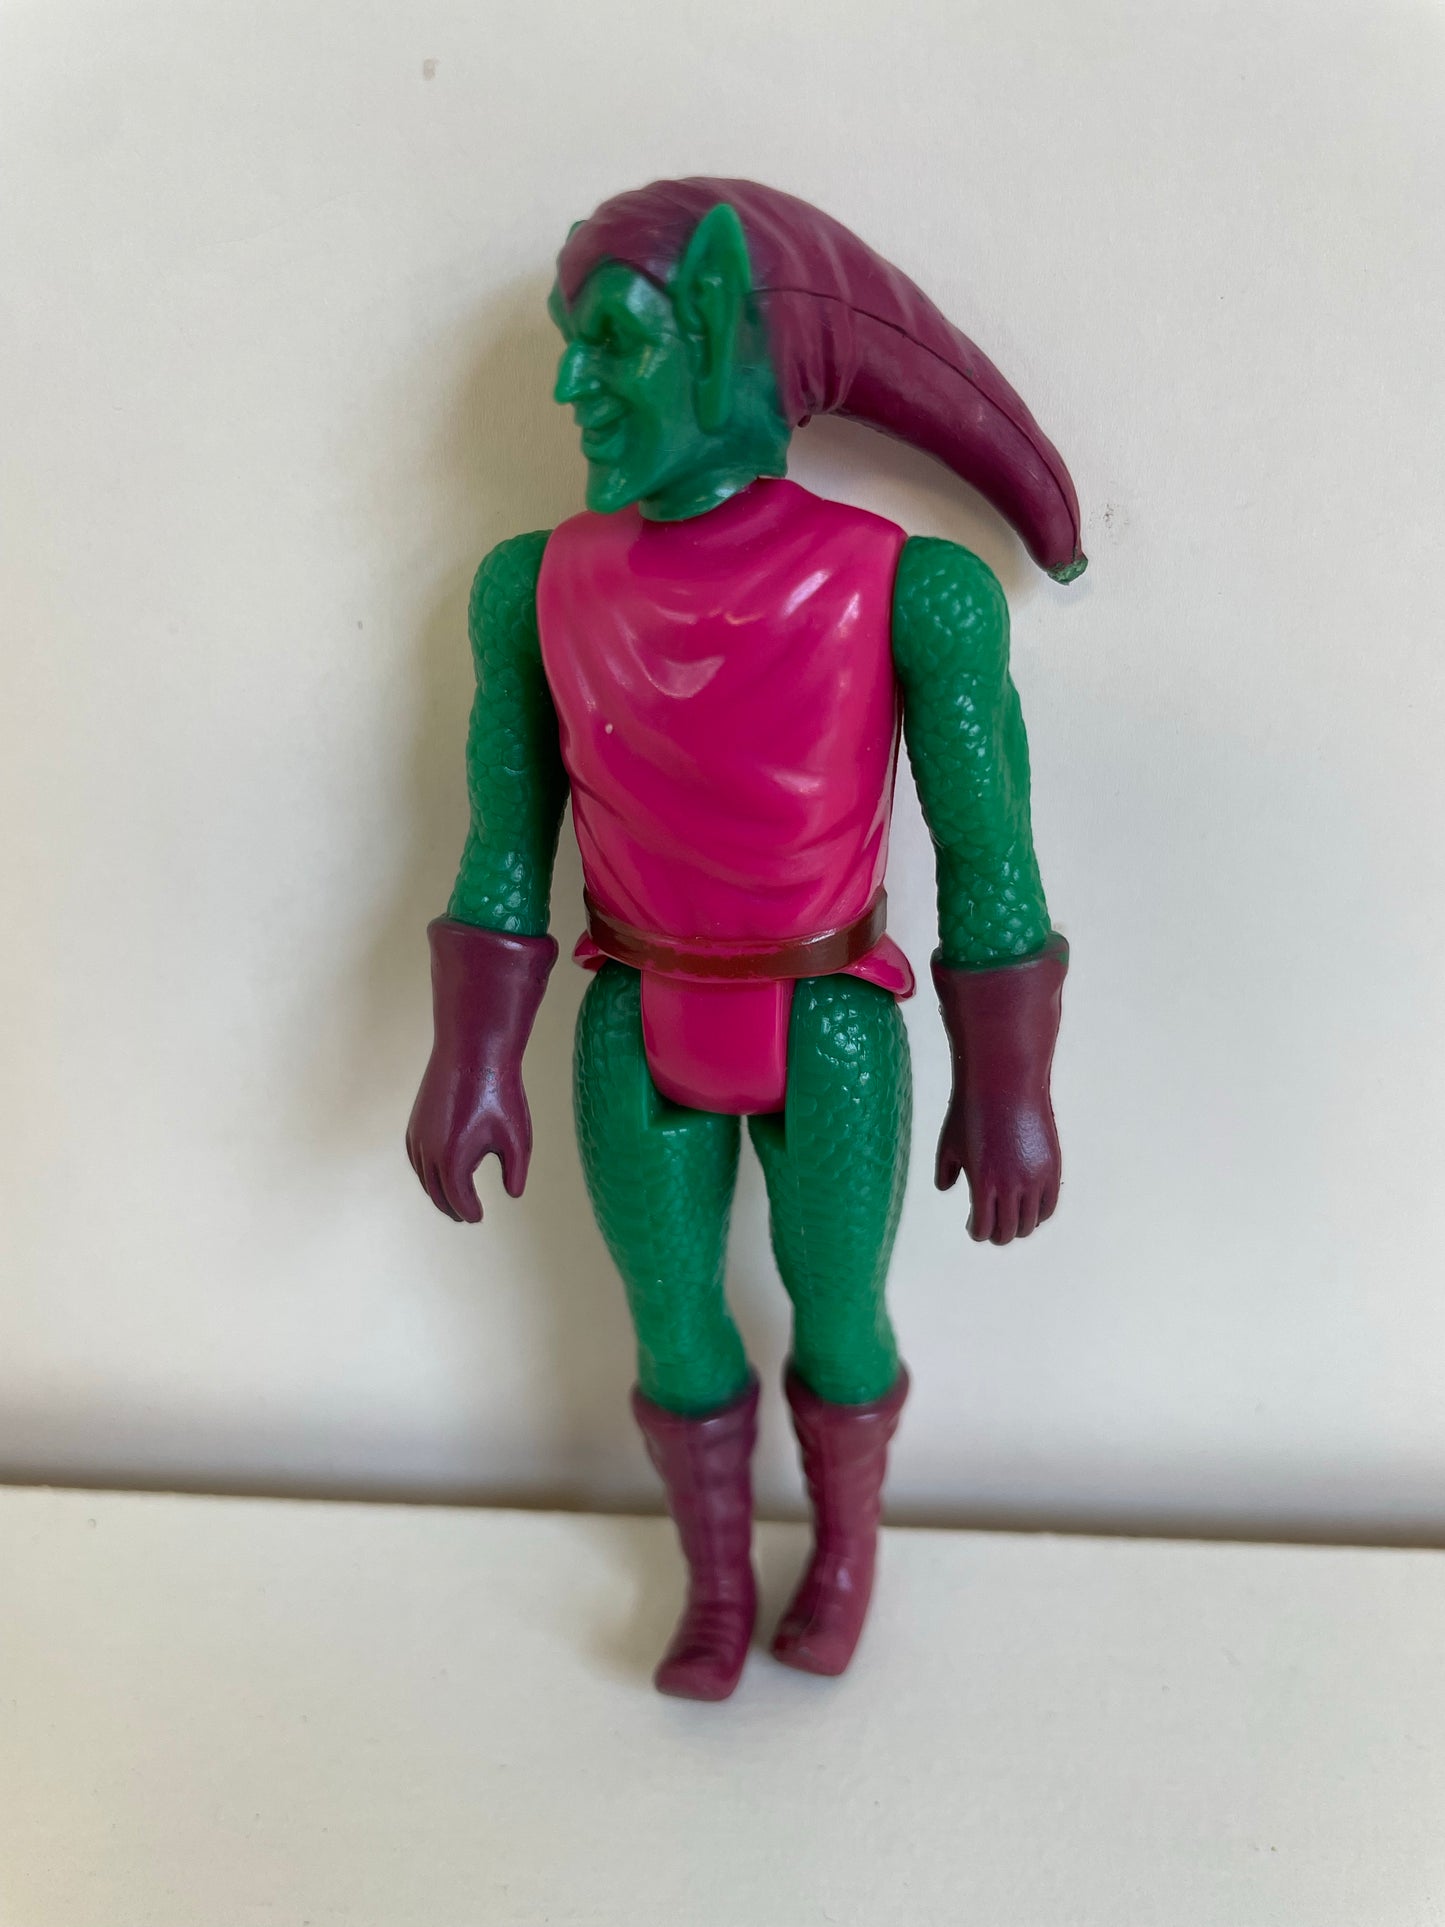 Marvel Mego Pocket Heroes Green Goblin Action Figure